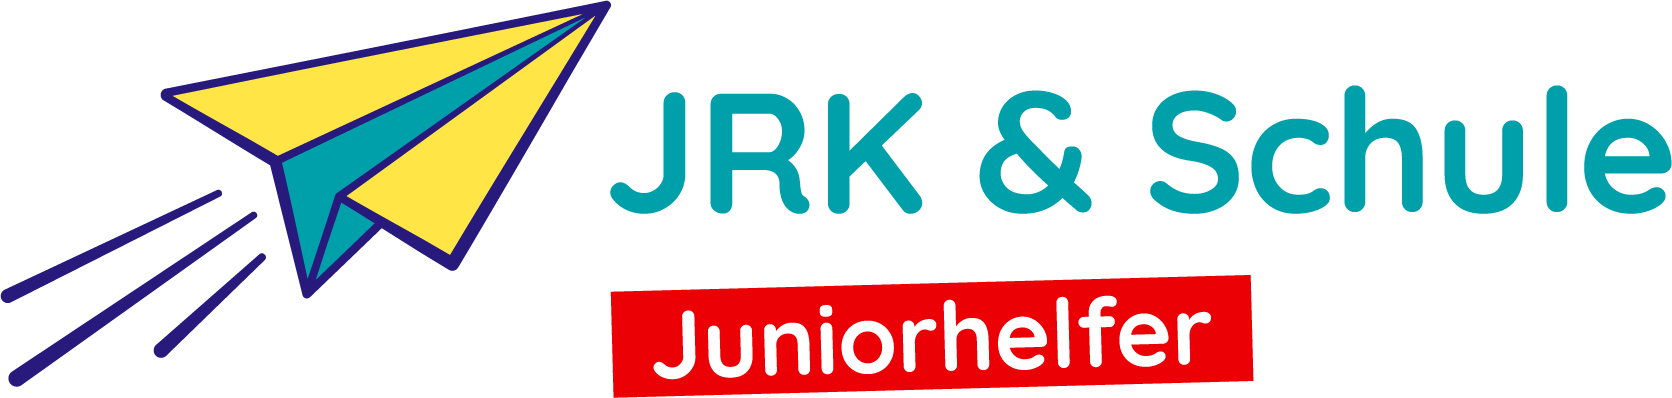 JRK-Schularbeit-Markenzeichen-Juniorhelfer-digital